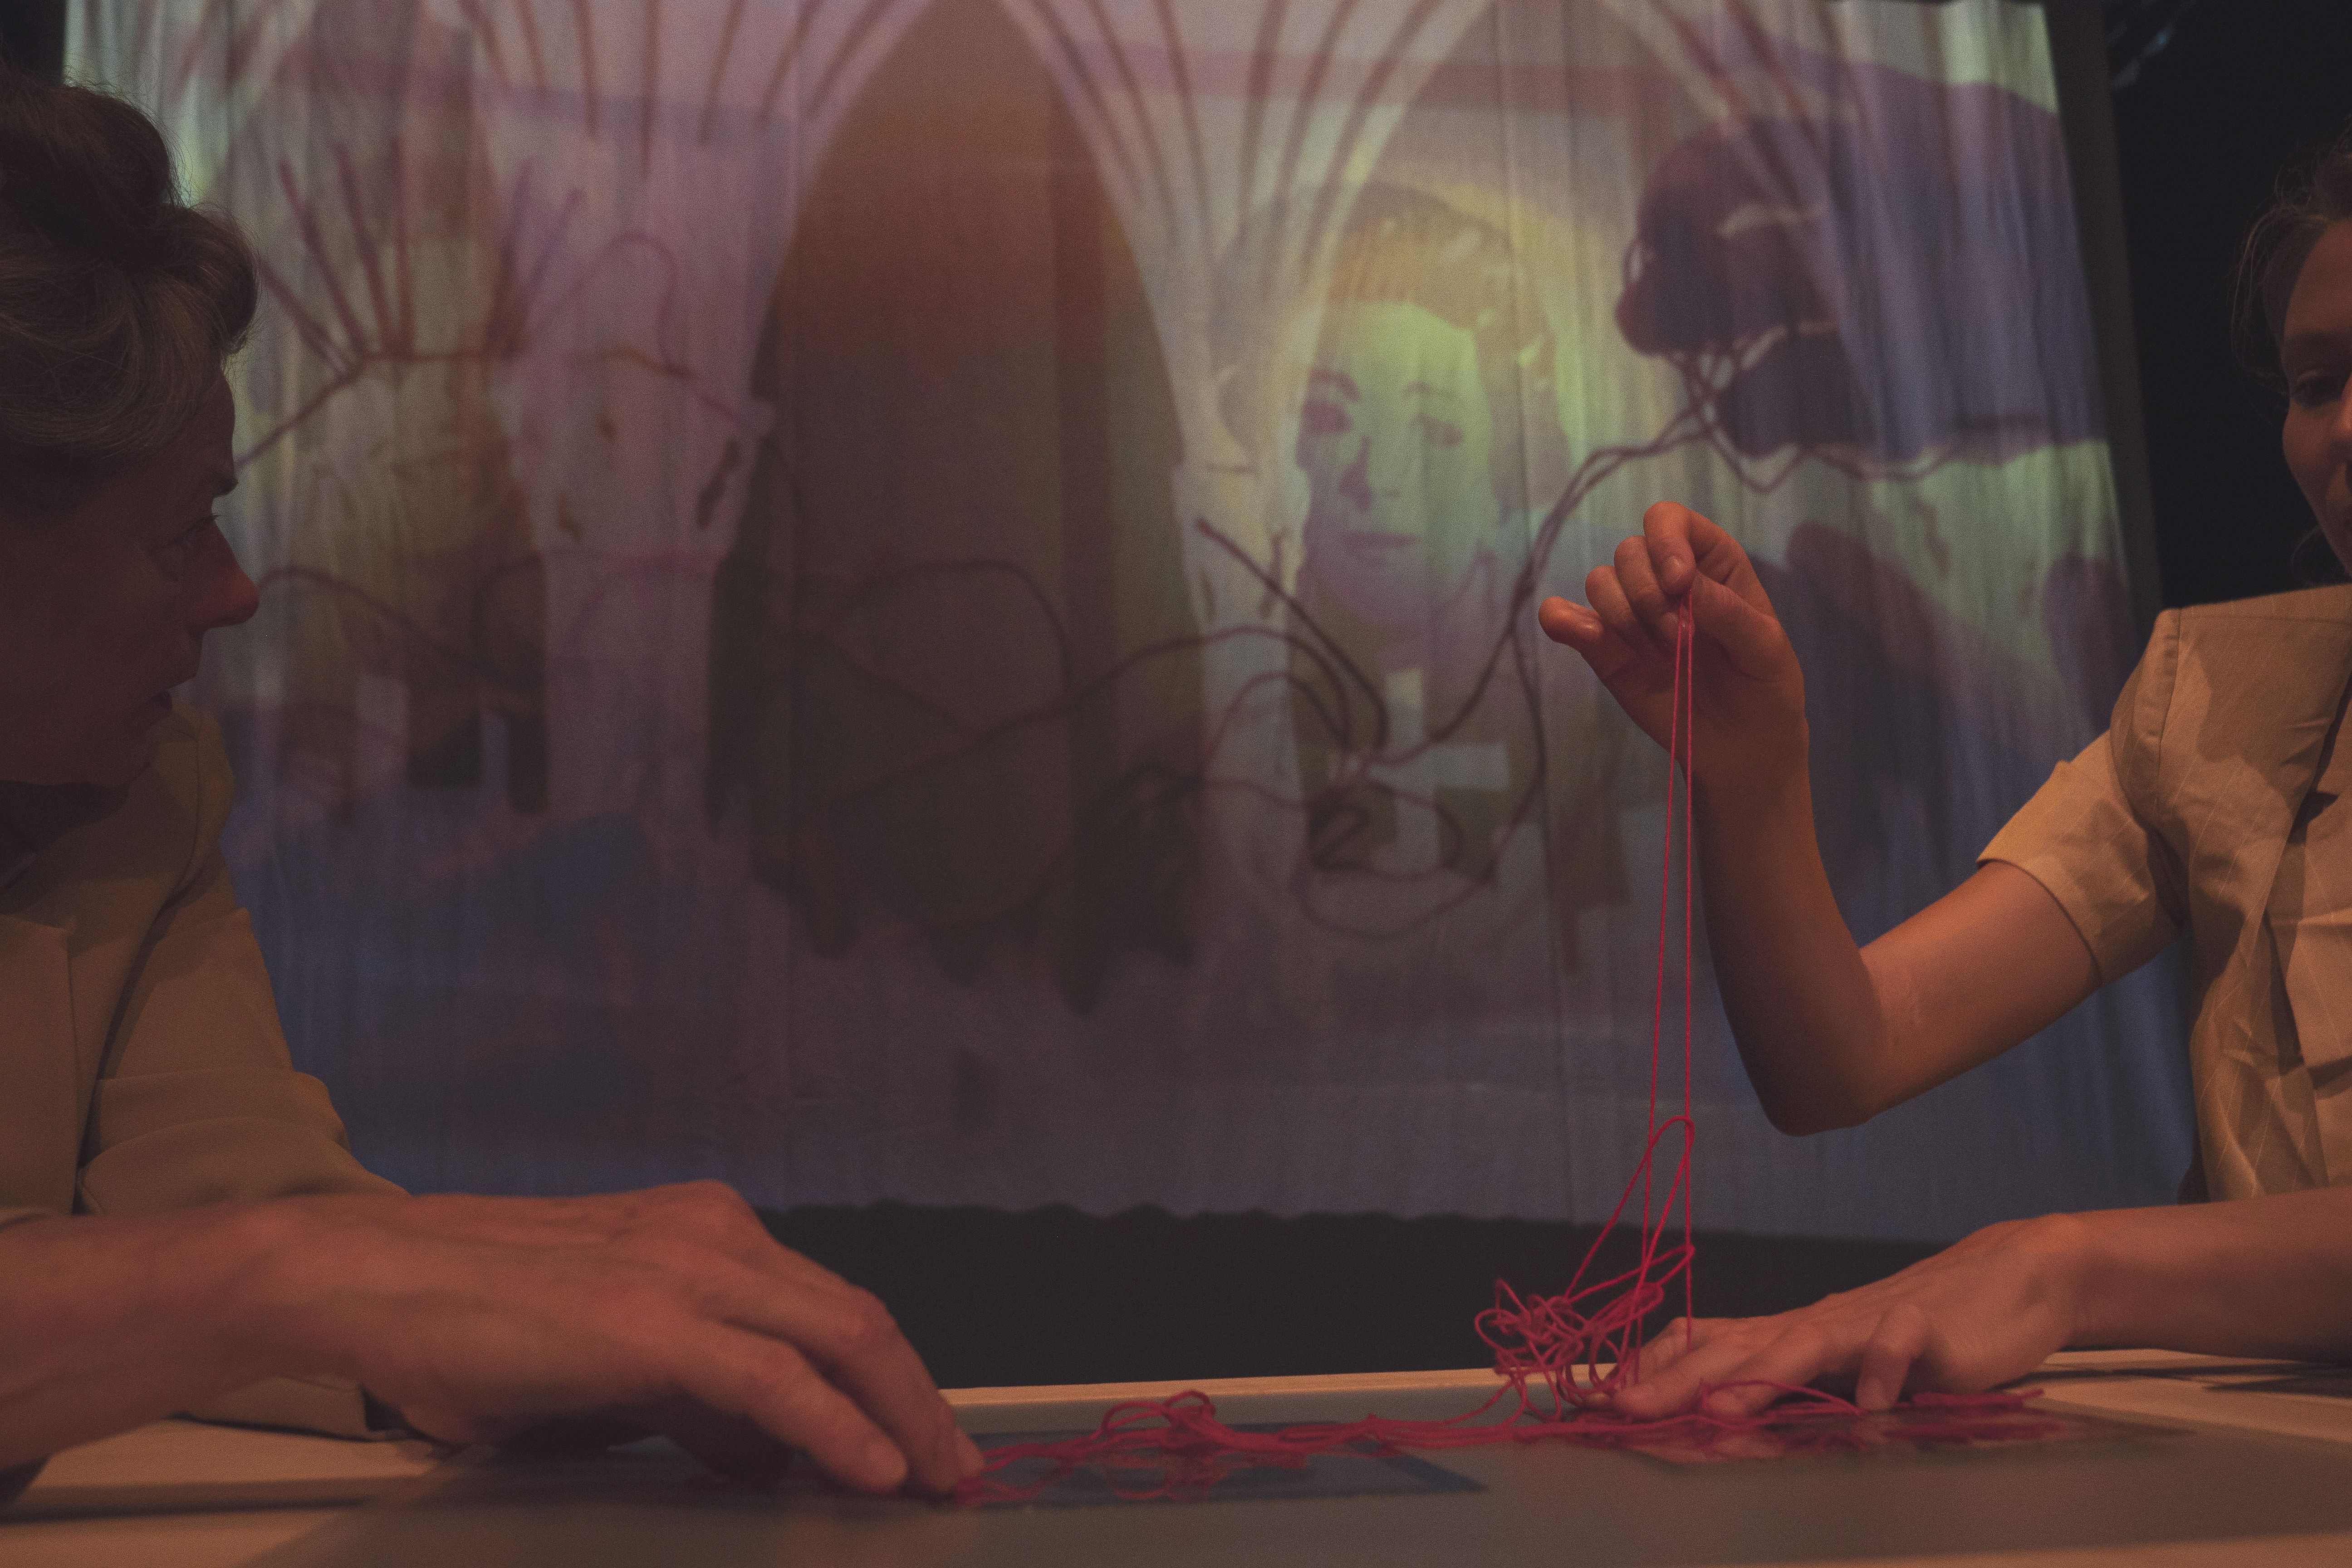 Vor einer Videoprojektionsfläche sind die Hände von zwei Schauspielerinnen im Bild, die einen roten Faden aus einem Knäuel ziehen.